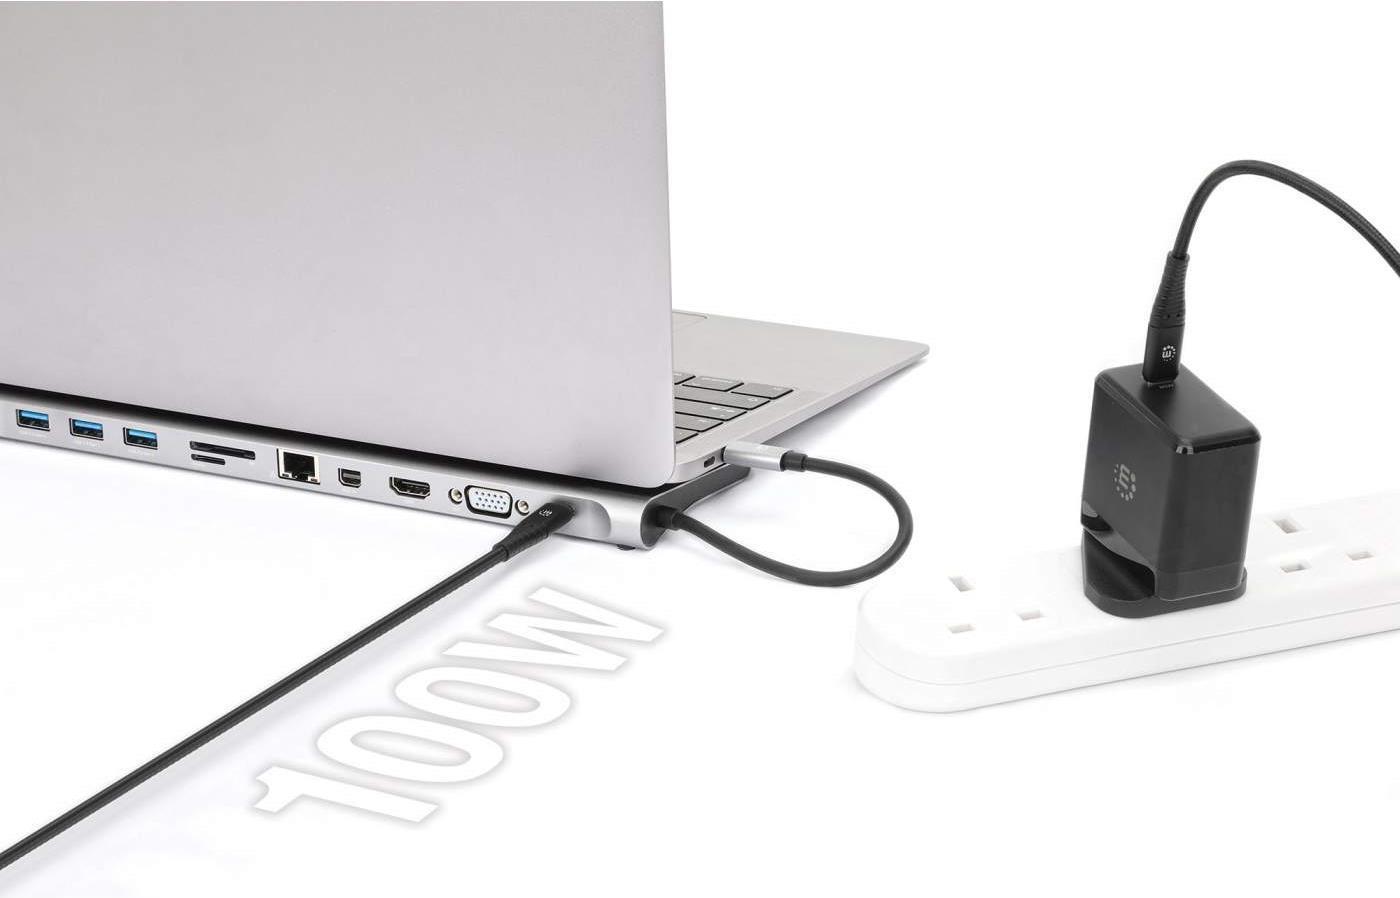 MANHATTAN USB-C PD 11-in-1-Dockingstation mit MST für drei Monitore USB 3.2 Gen 1 Typ C-Stecker auf HDMI-, Mini-DisplayPort- und VGA-Buchse (bis zu 4K@30Hz), drei USB-A Ports (5 Gbit/s), USB-C Power Delivery-Port, Gigabit-RJ45-Port, SD/MicroSD-Kartenleser und 3,5 mm-Aux-Port, Aluminium, grau (130578)